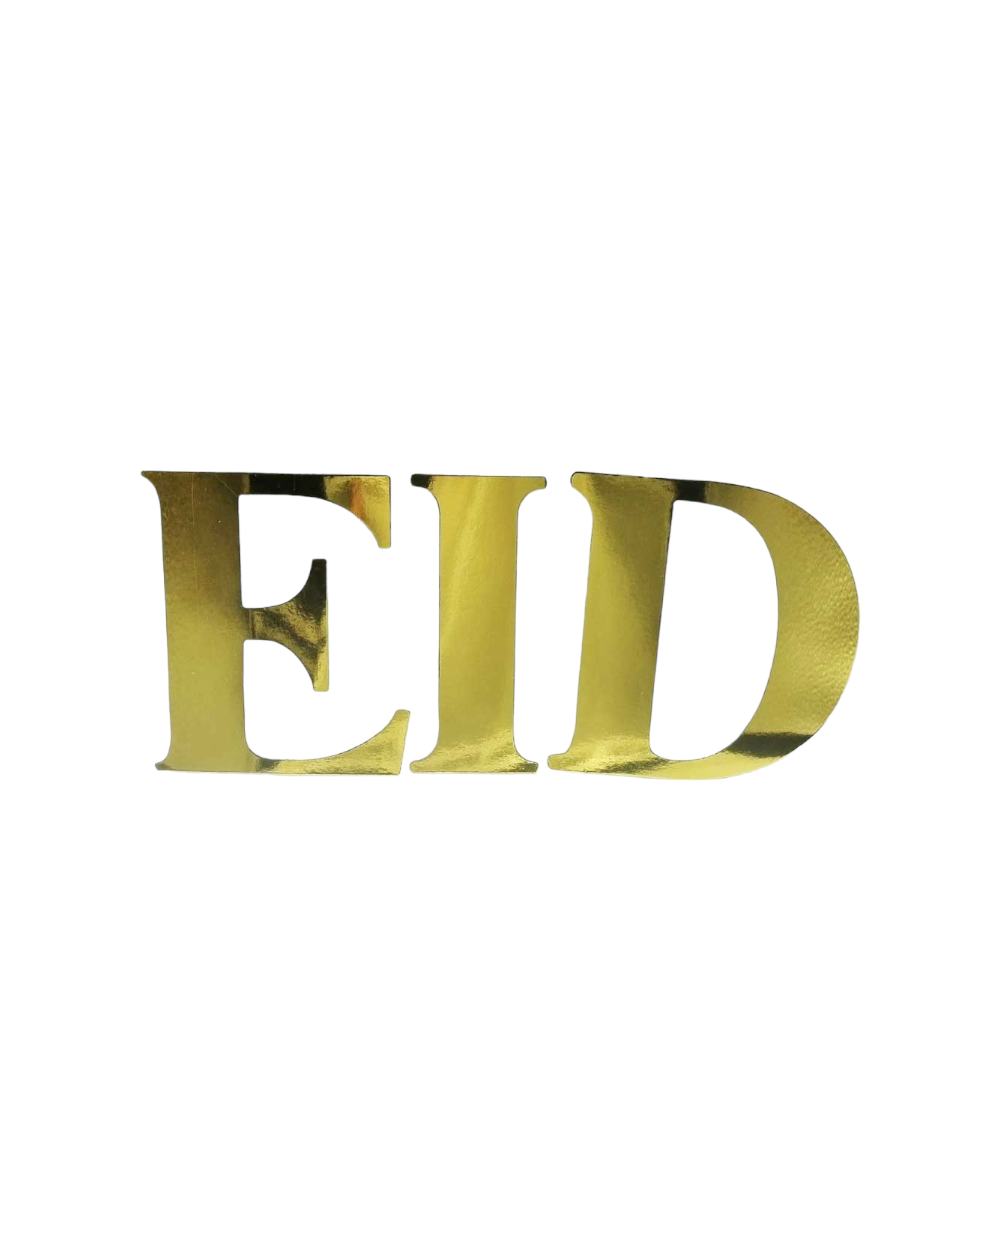 EID Cardboard Letters - Gold